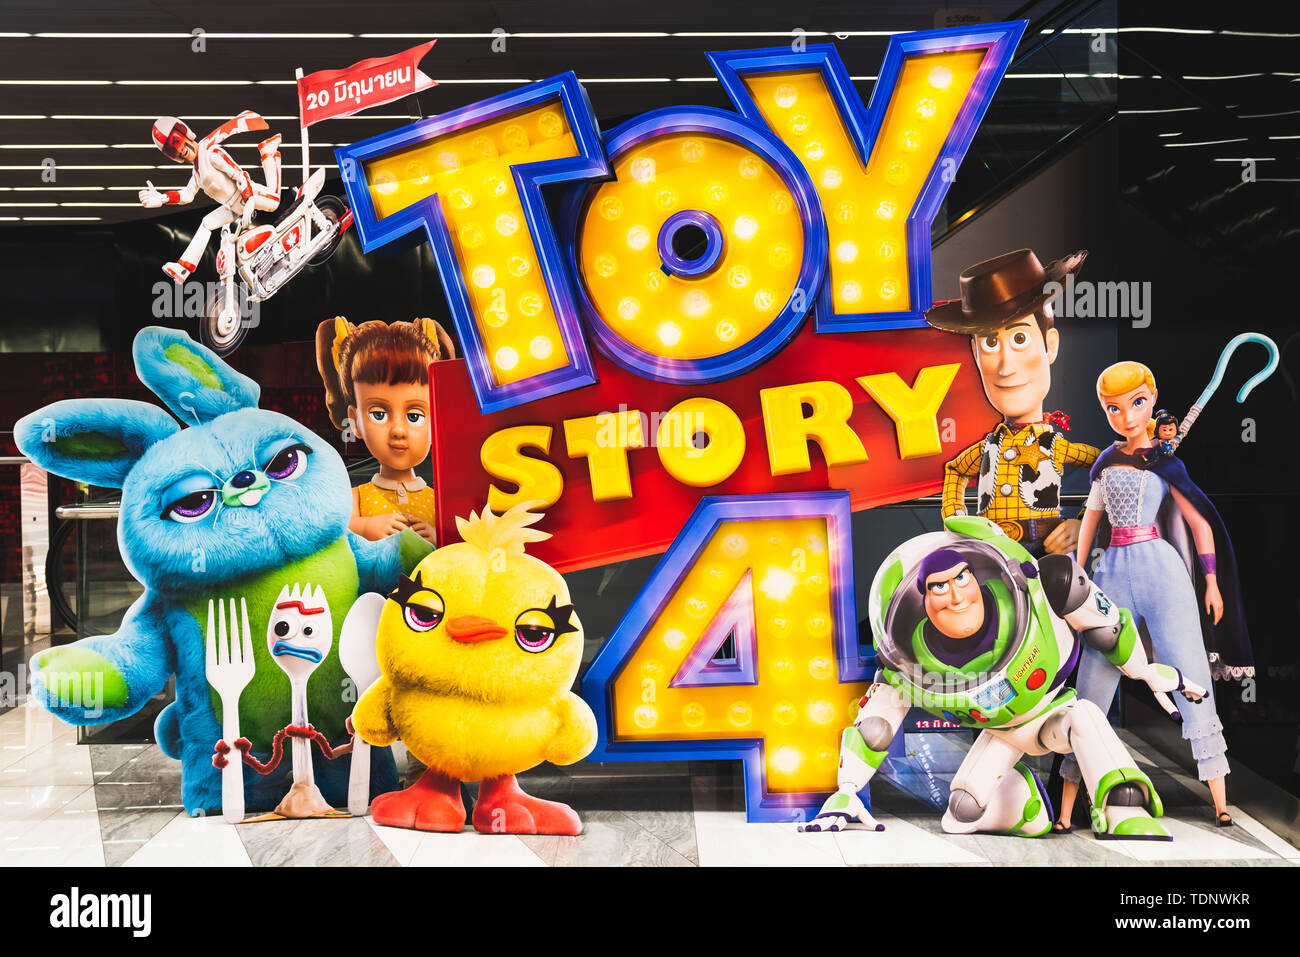 Bangkok, Thailand - 17.Juni 2019: Toy Story 4 Film Hintergrund Anzeige mit Zeichentrickfiguren in Kino. Kino Werbung Werbung Stockfoto